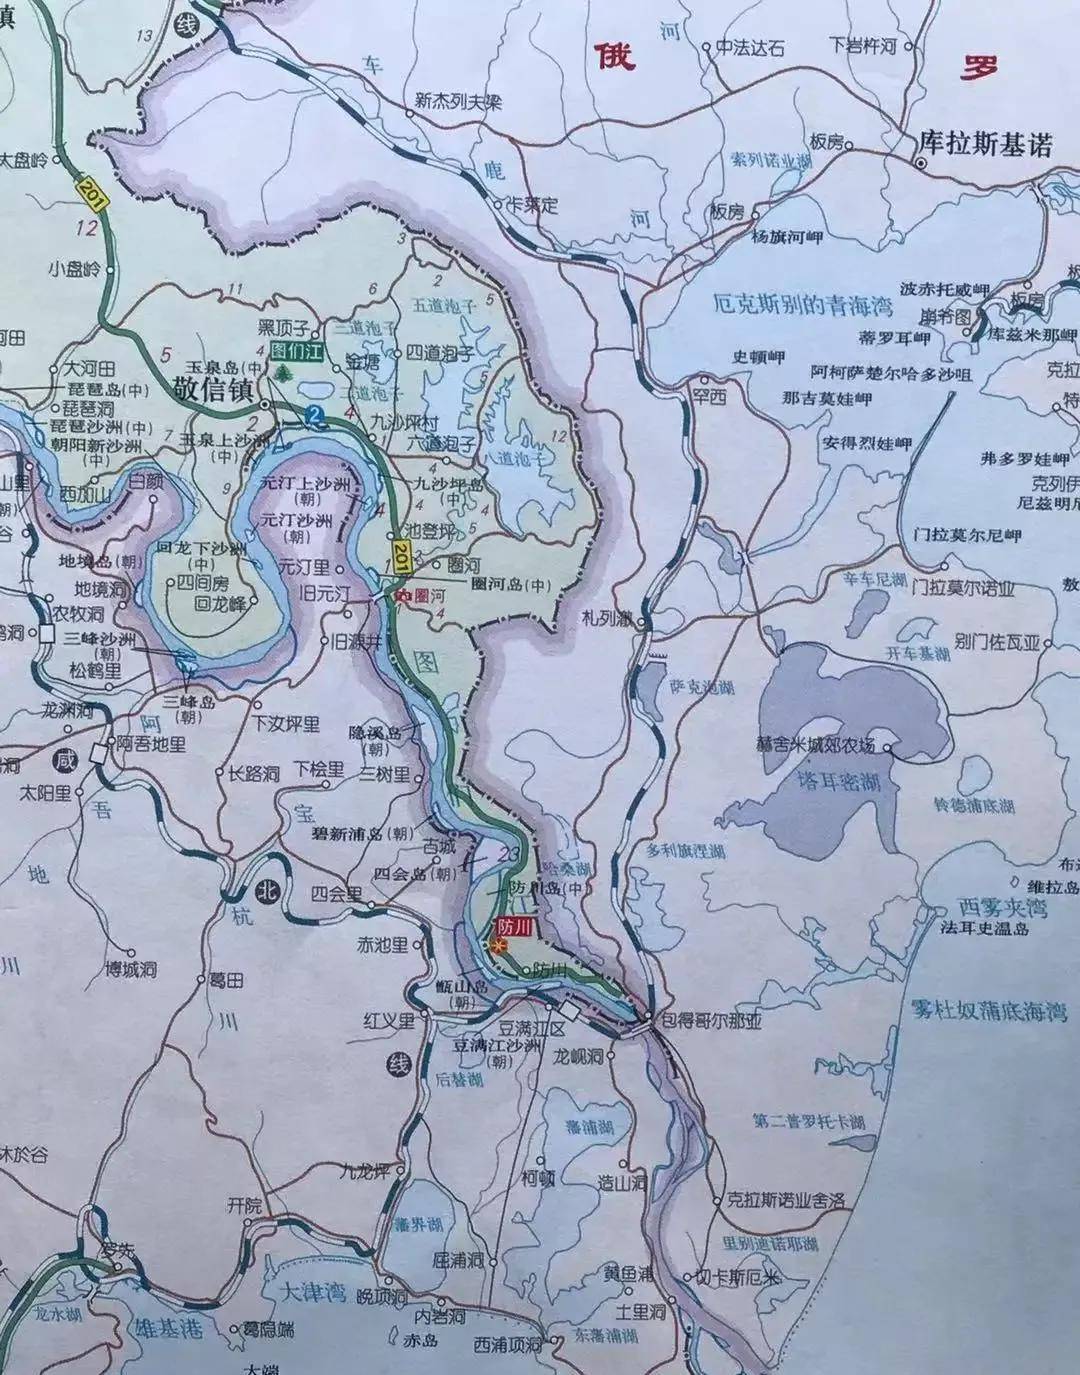 防川:东方第一村,联哈桑湖修运河或打通东北入海口